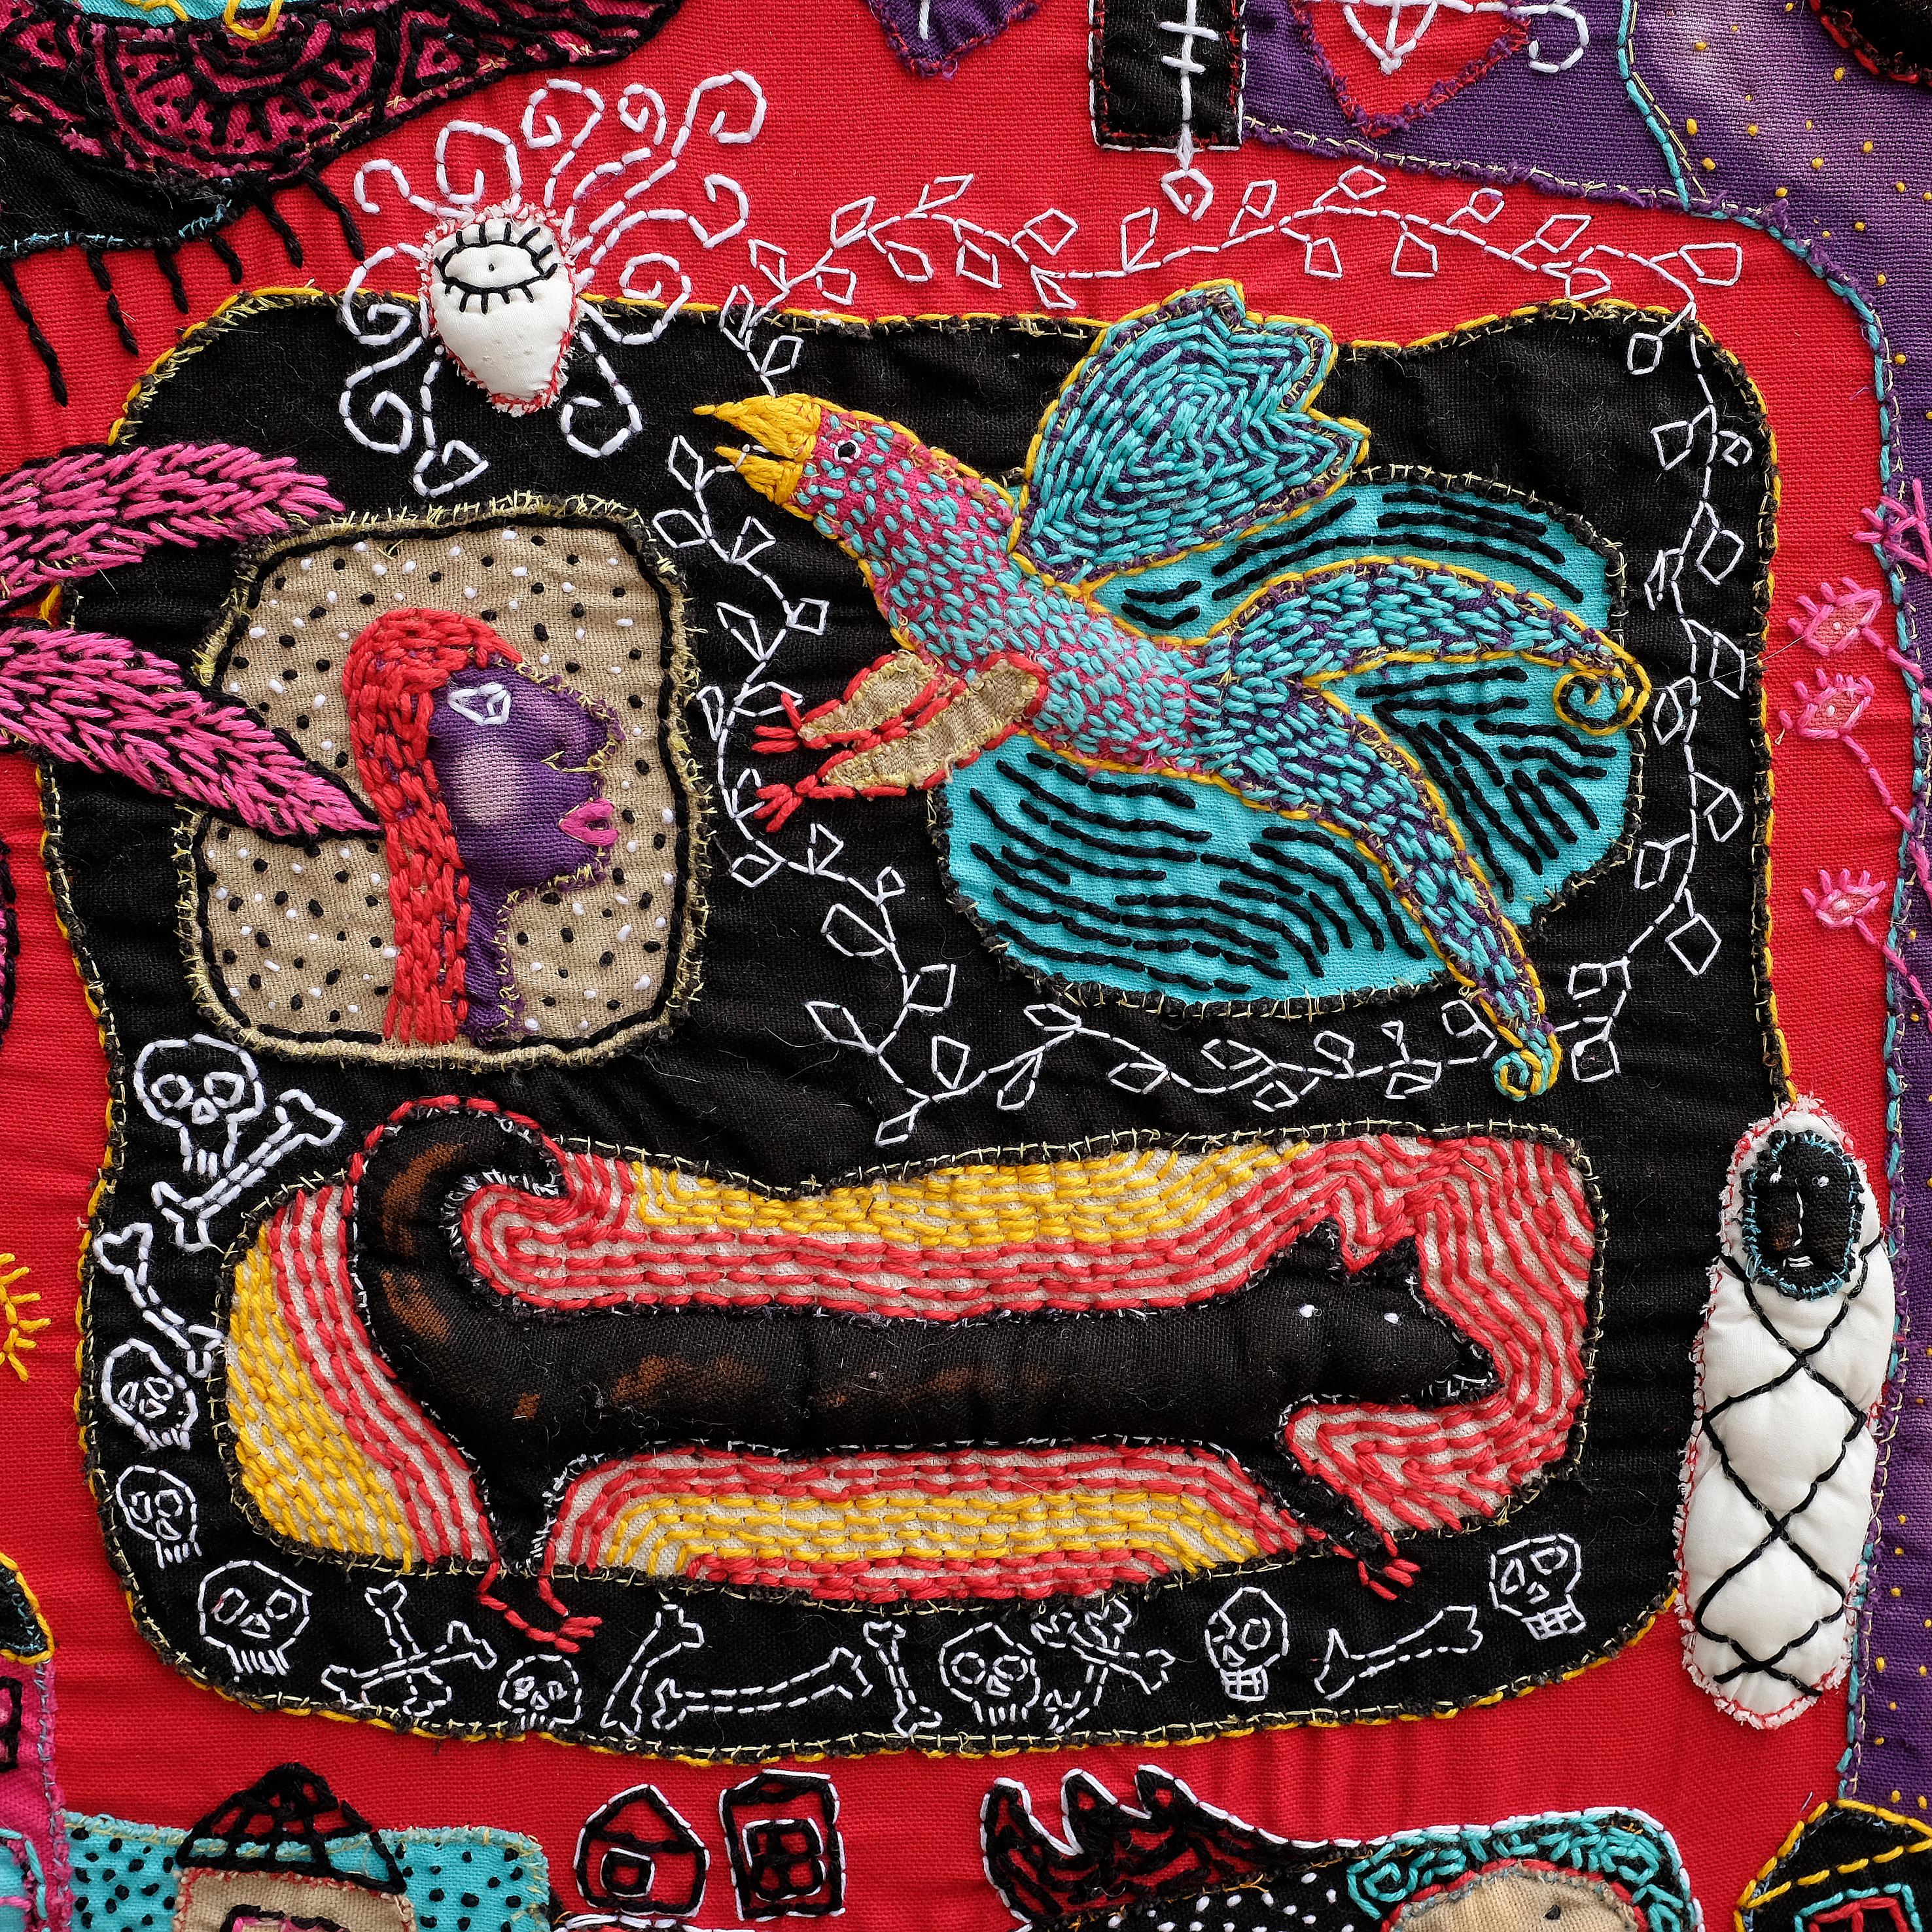 Textilmalerei handgenäht
Einzigartige Kunstwerke
Signiert von der Künstlerin